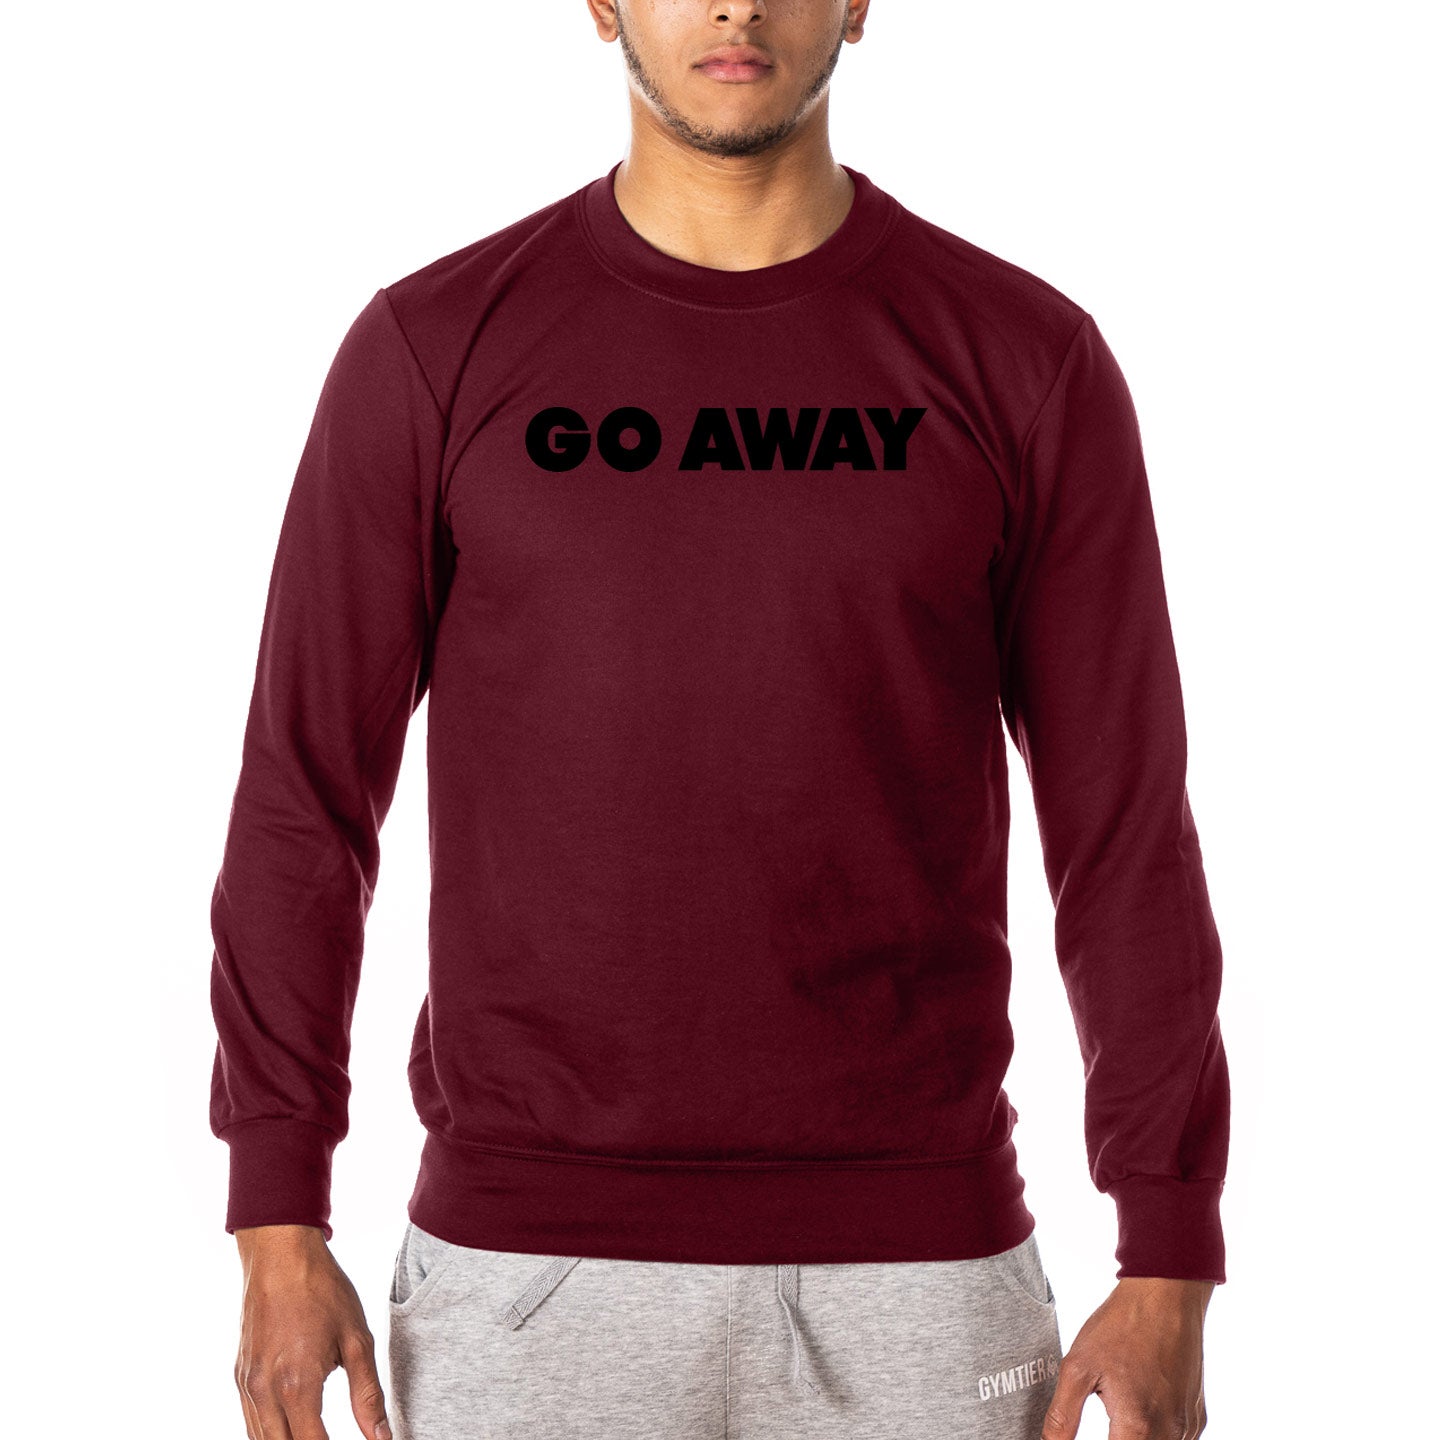 Go Away - Gym Sweatshirt